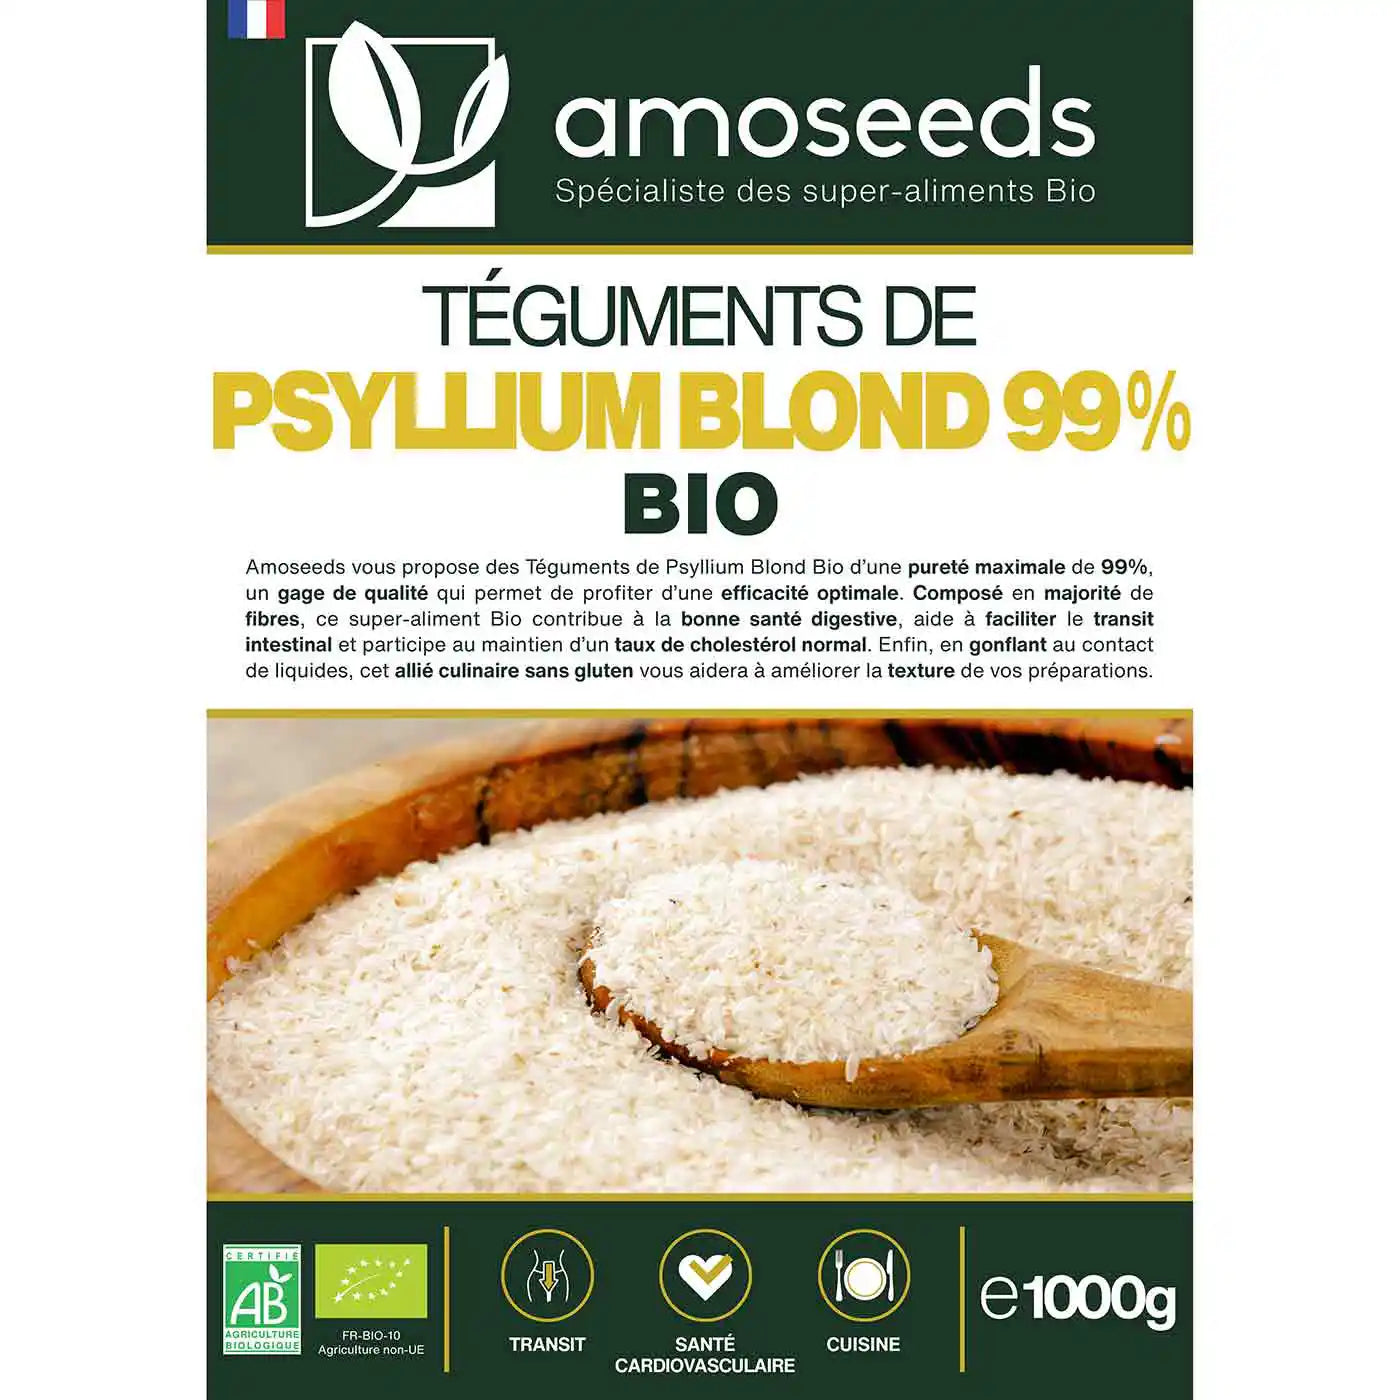 Psyllium Blond Bio 1KG amoseeds specialiste des super aliments bio,